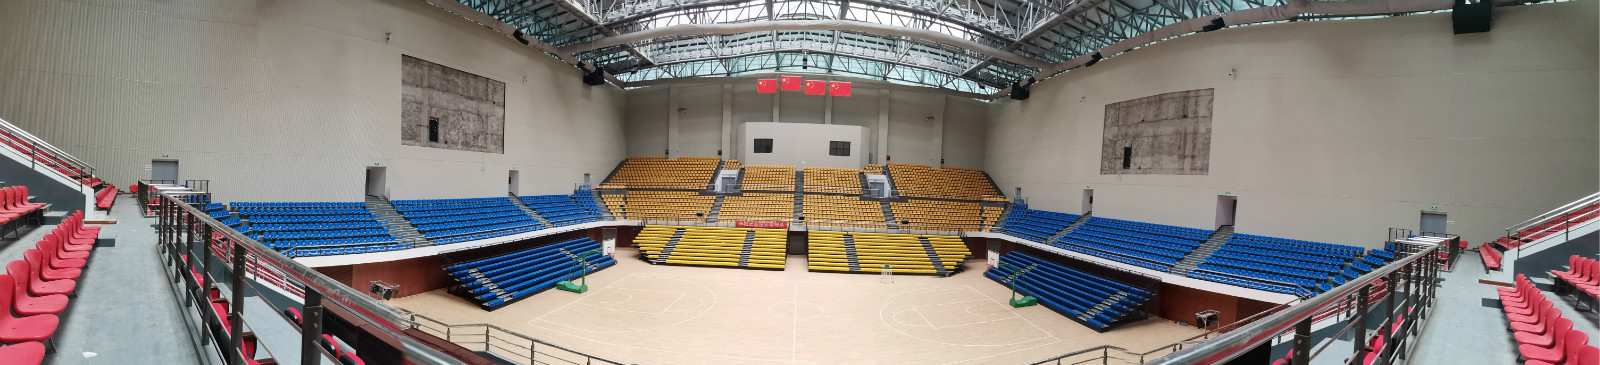 苏州奥体中心篮球场图片